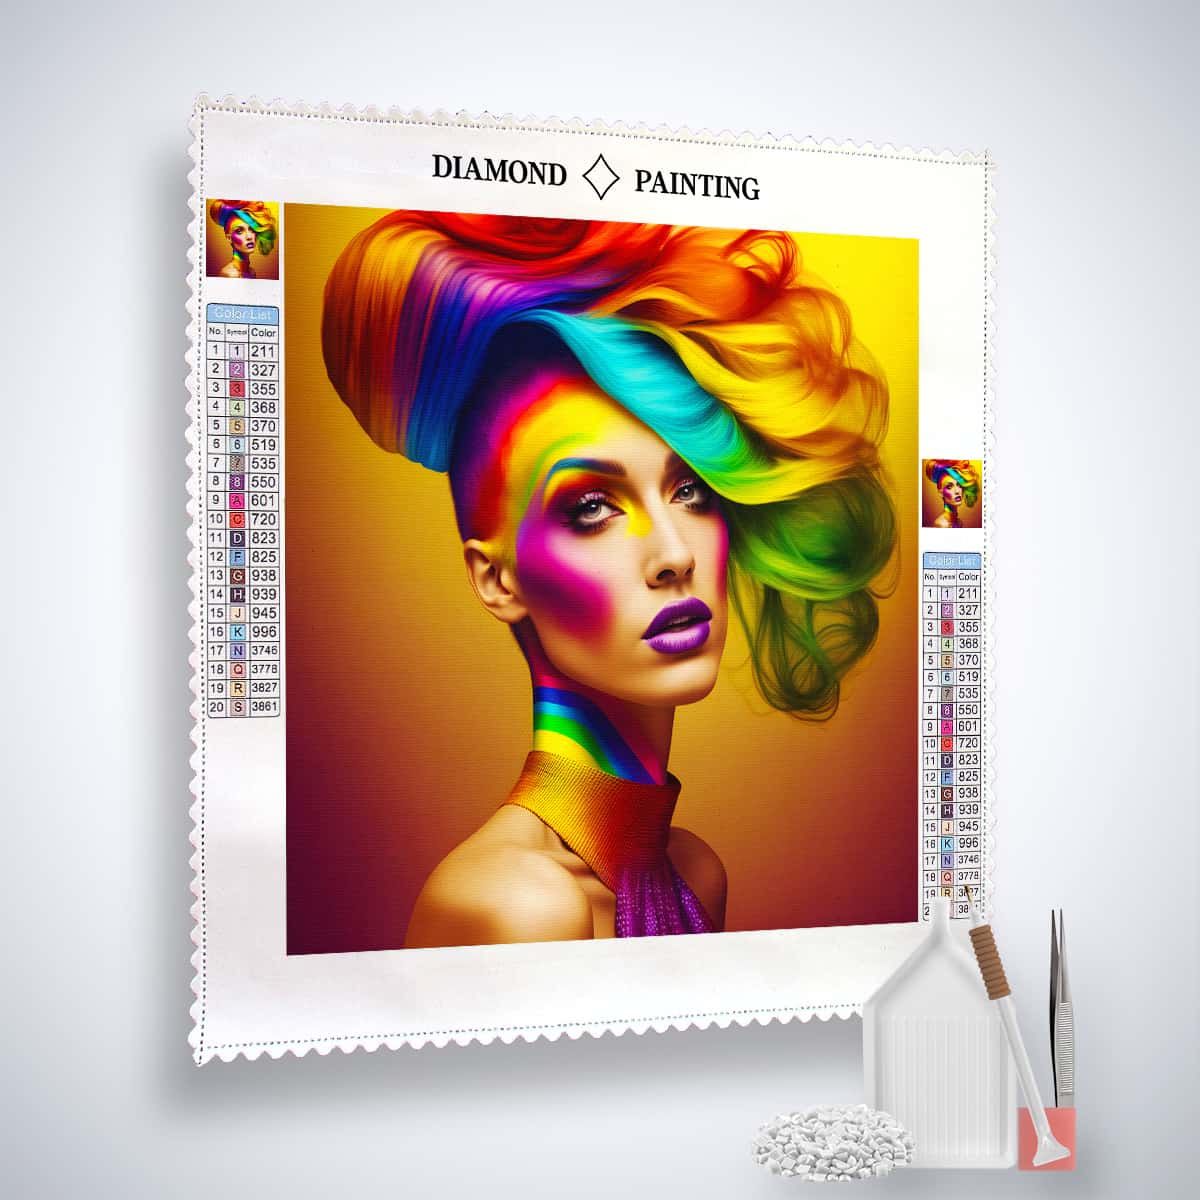 AB Diamond Painting - Frau mit Regenbogenfrisur - gedruckt in Ultra-HD - AB Diamond, Abstrakt, Menschen, Neu eingetroffen, Quadratisch